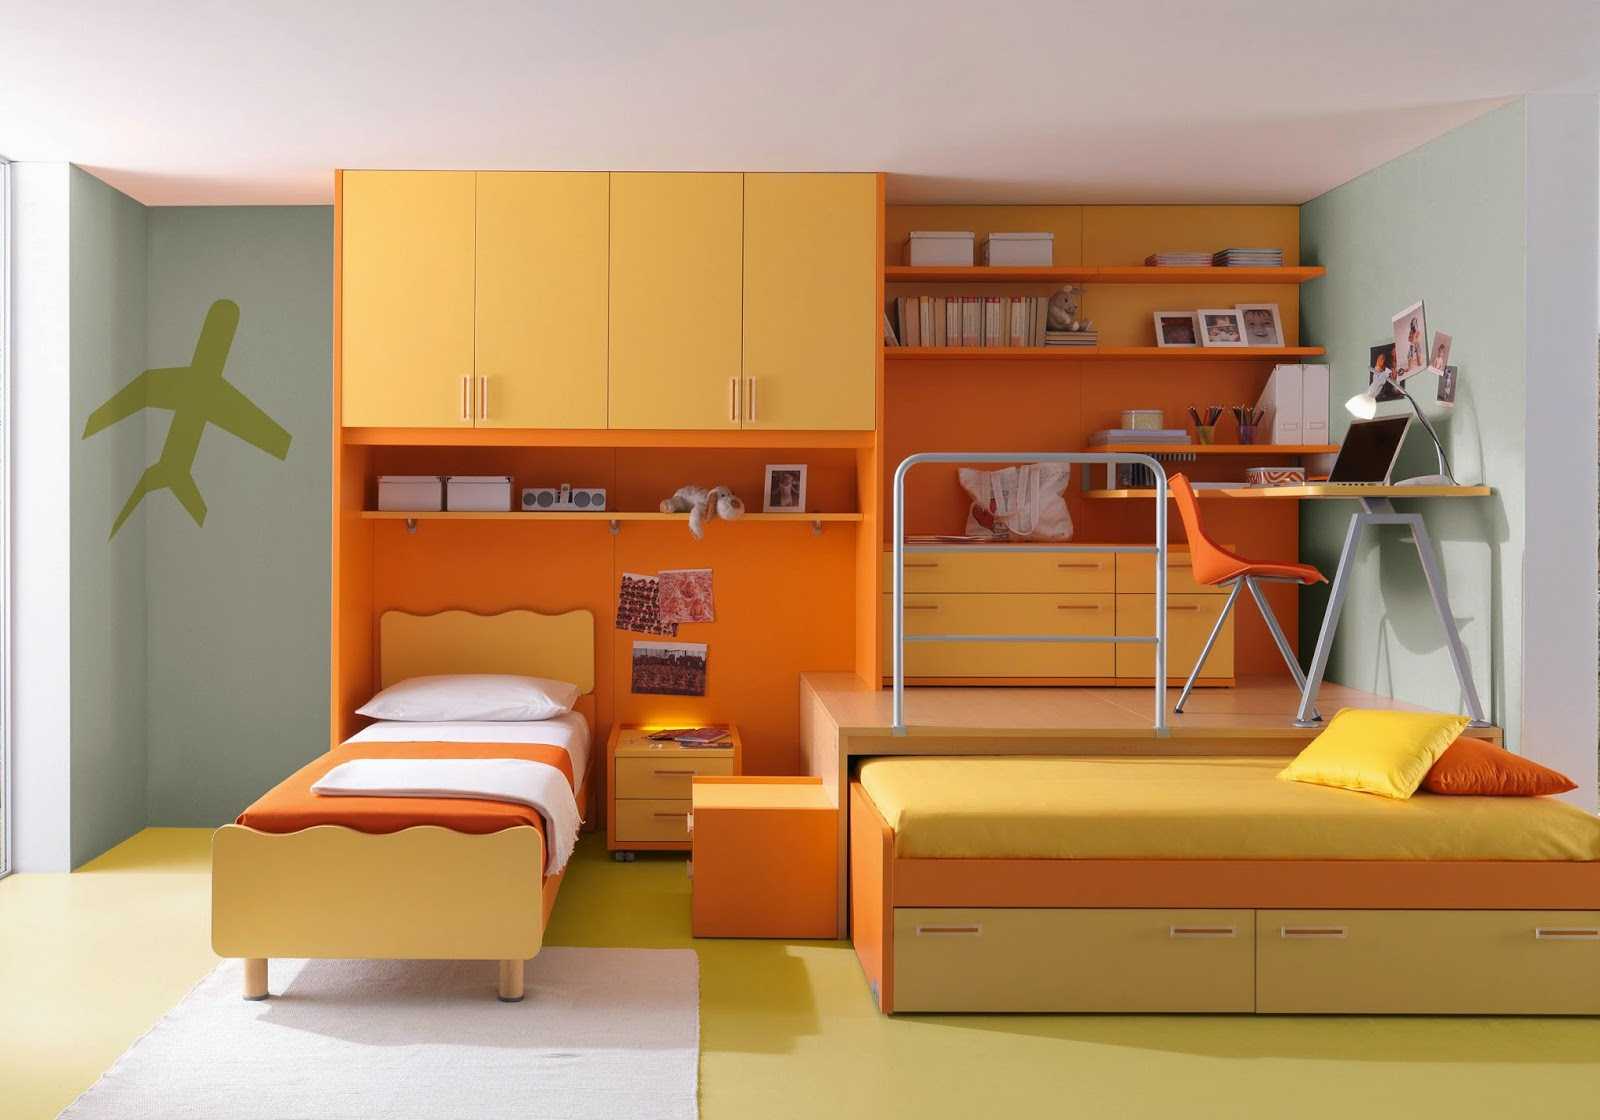 une combinaison d'orange vif à l'intérieur de la maison avec d'autres couleurs